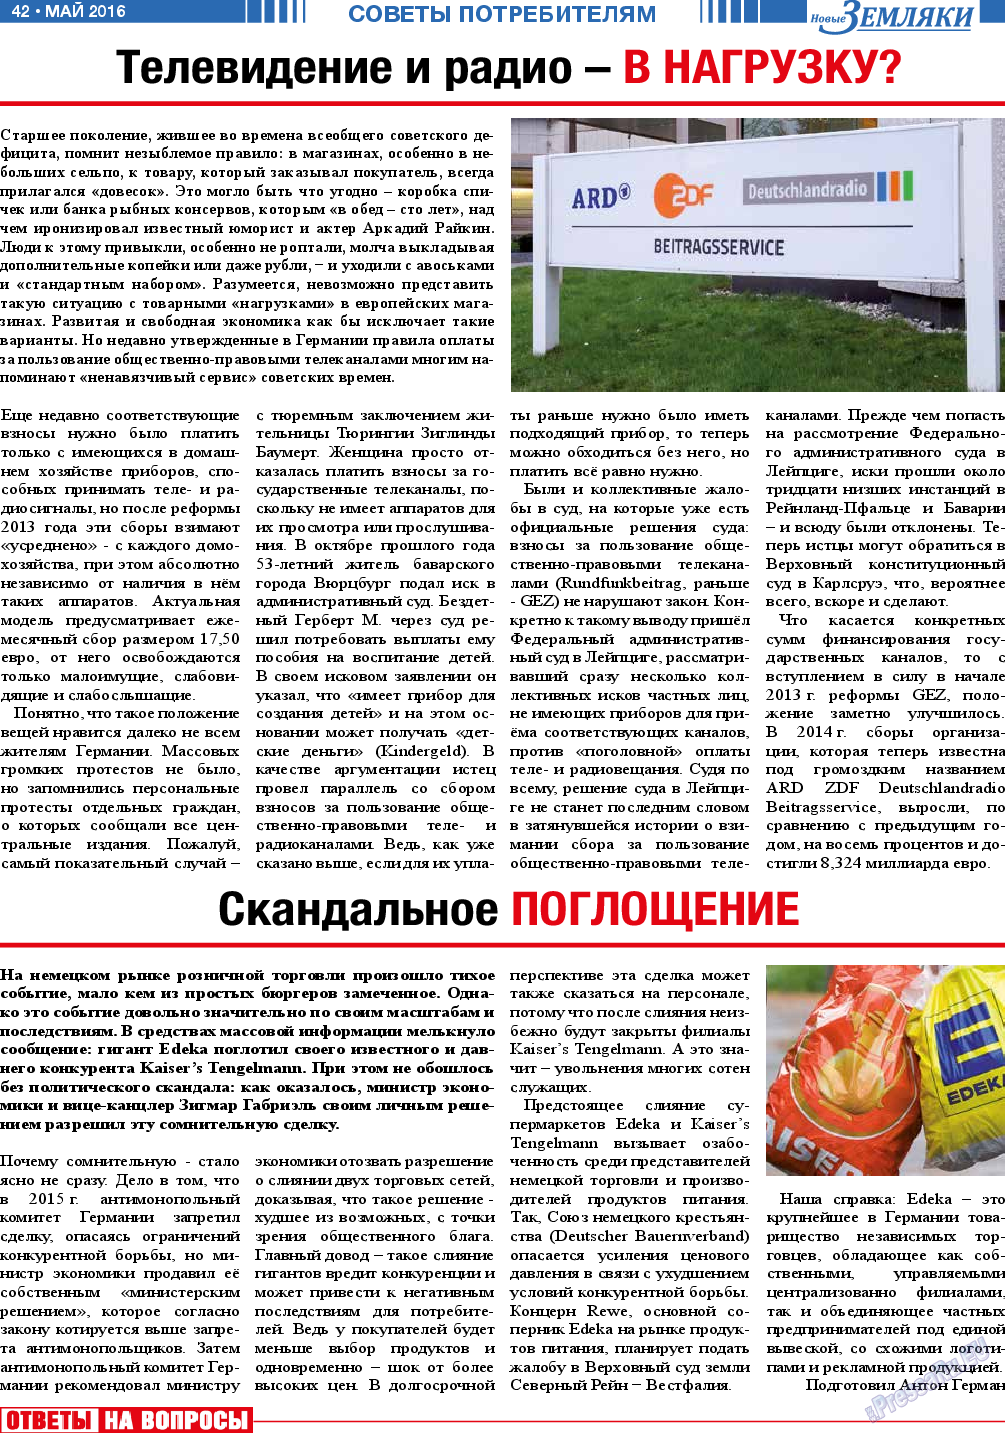 Новые Земляки, газета. 2016 №5 стр.42